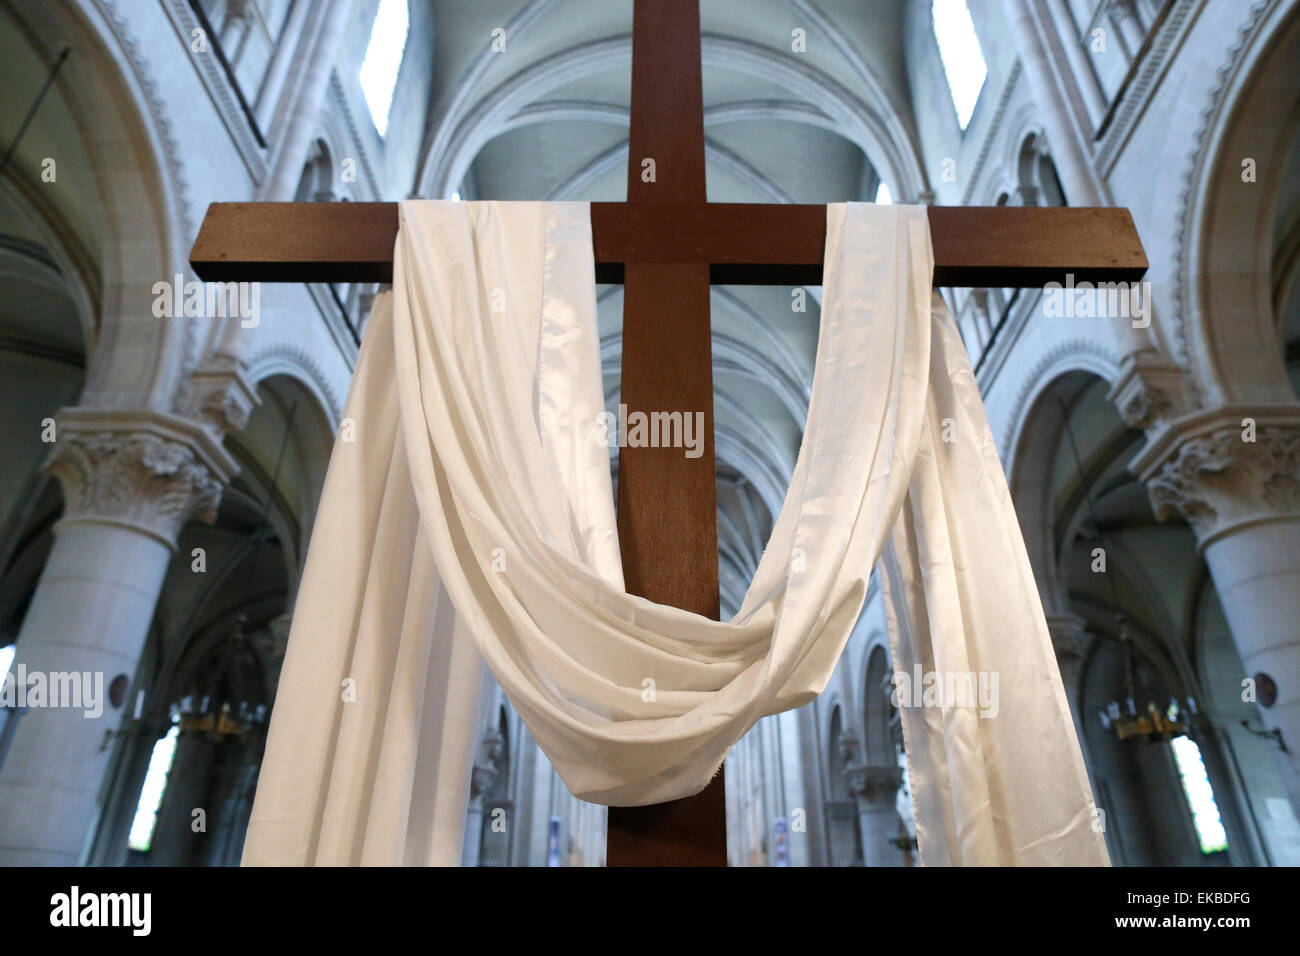 La croce e il panno bianco simboleggiano la risurrezione di Gesù, la Settimana Santa, Saint-ambroise chiesa, Parigi, Francia, Europa Foto Stock